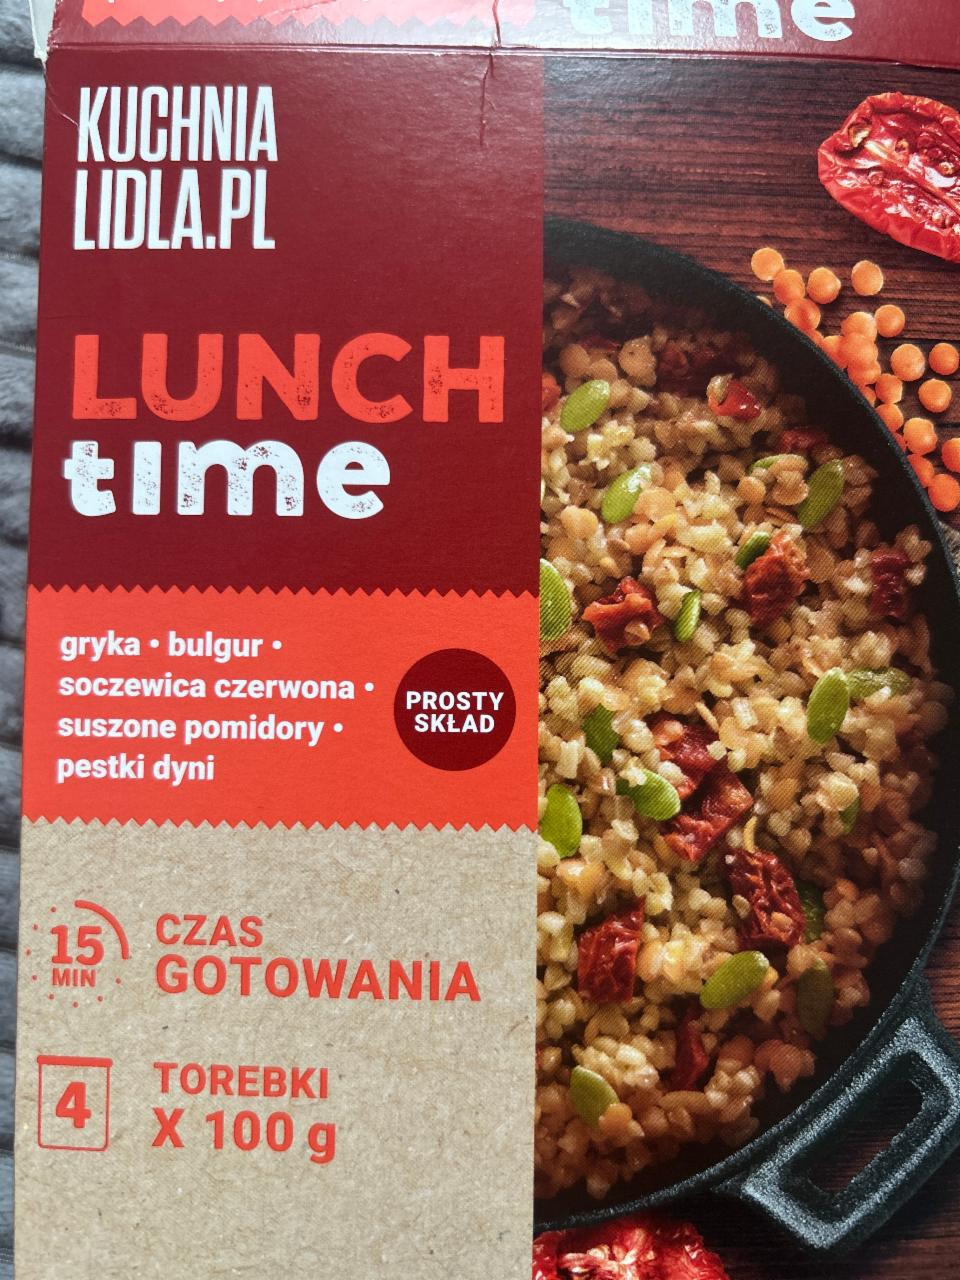 Фото - Lunch time gryka-bulgur-soczewica czerwona-suszone pomidory-pestki dyni Kuchnia Lidla.Pl